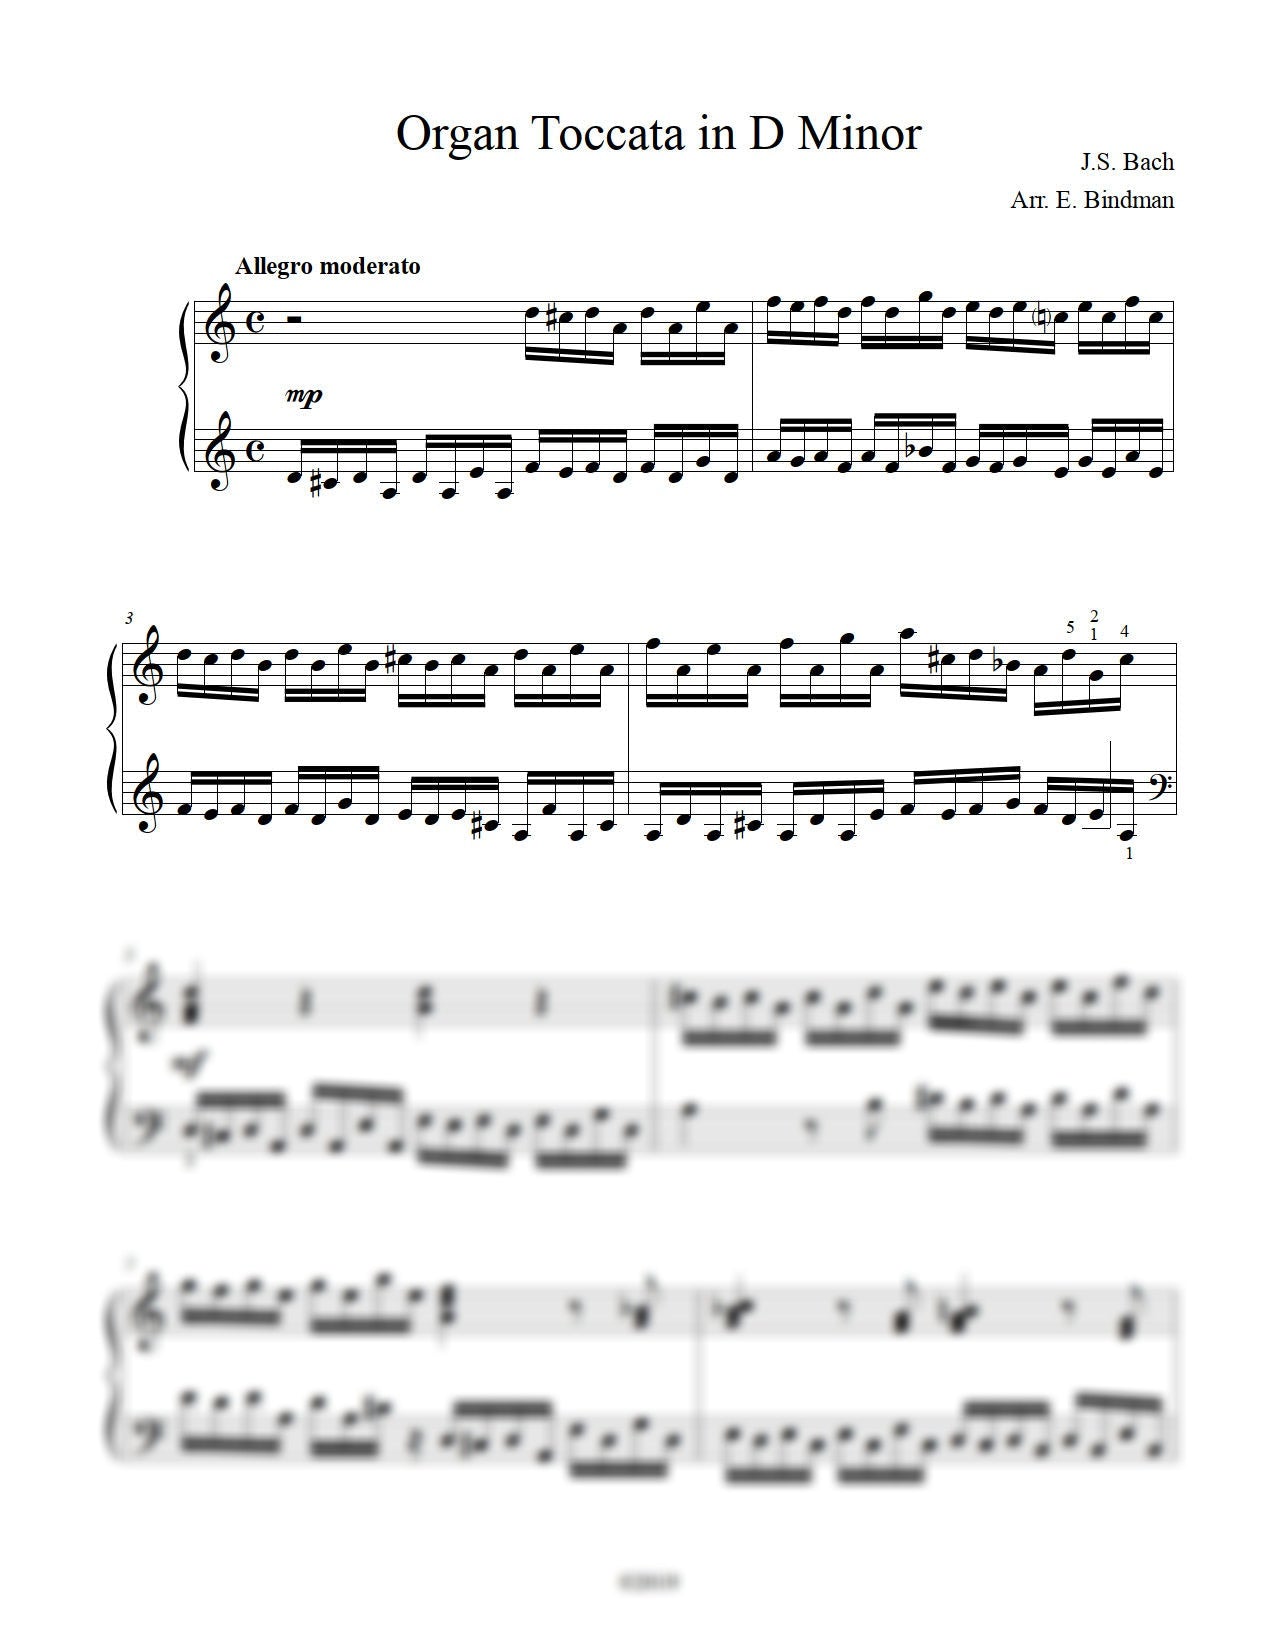 Bach: Organ Toccata in D Minor, BWV 538 – for piano